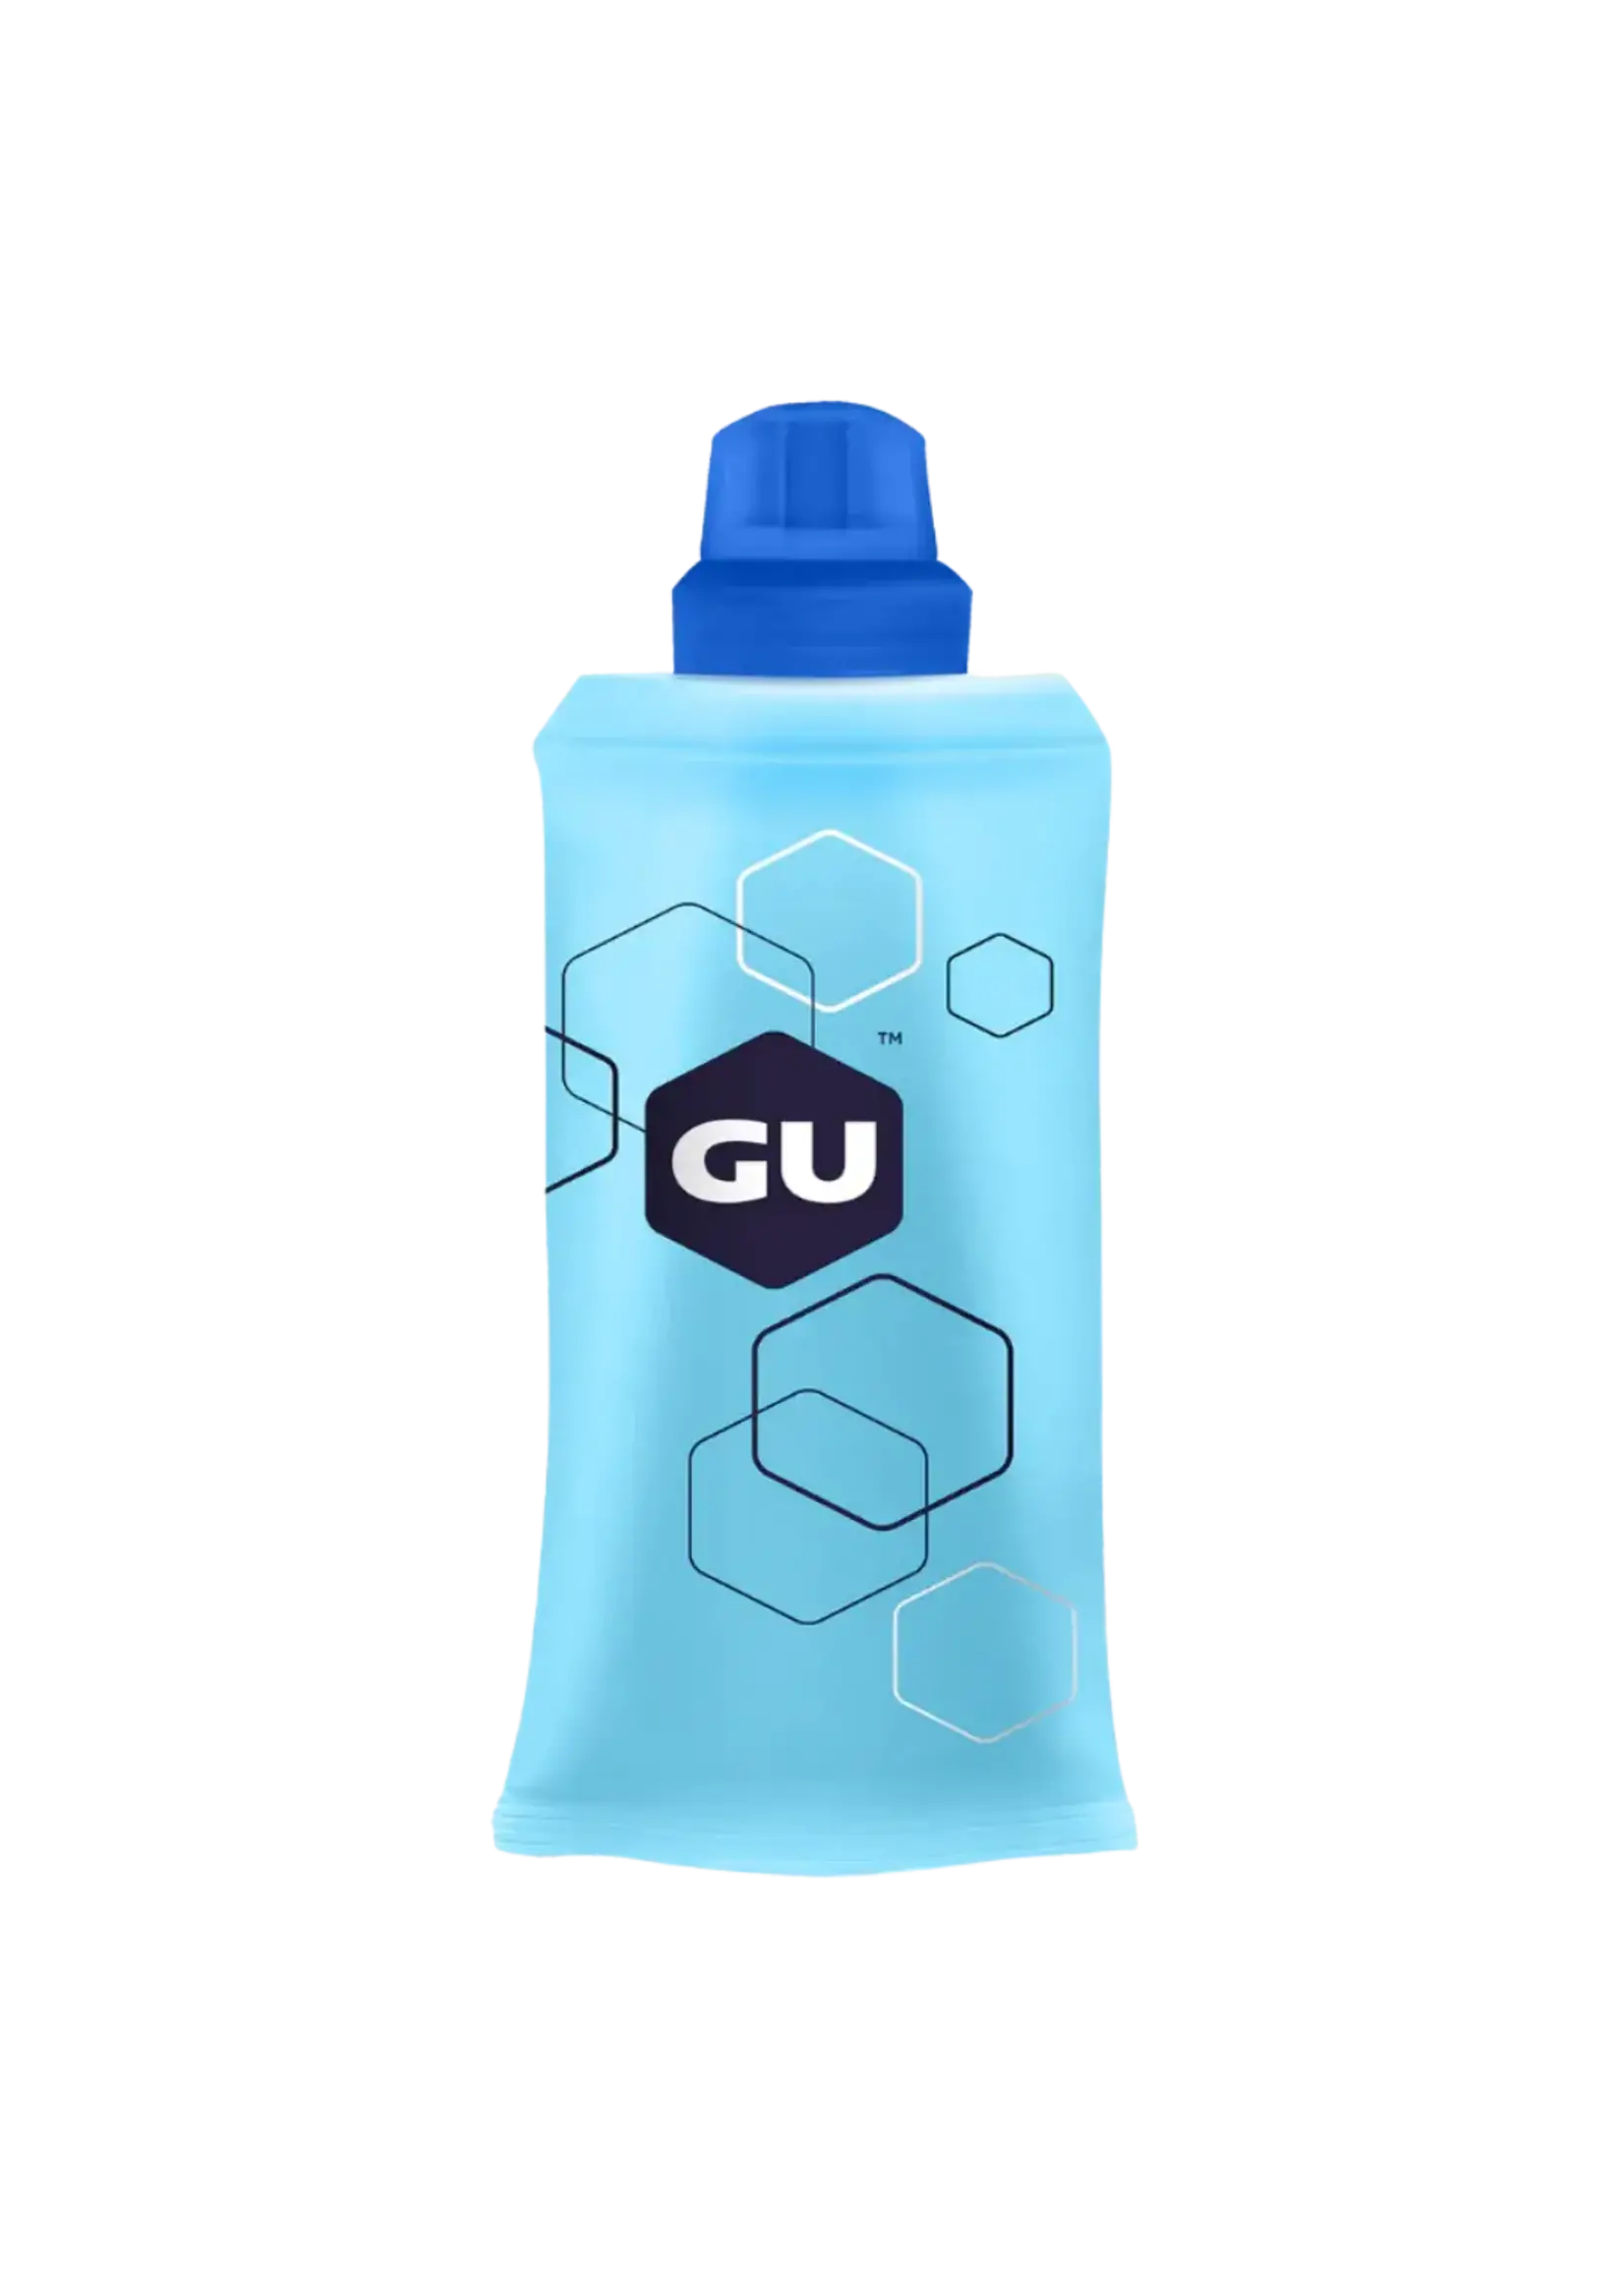 GU Gu Soft Flask 5.5oz